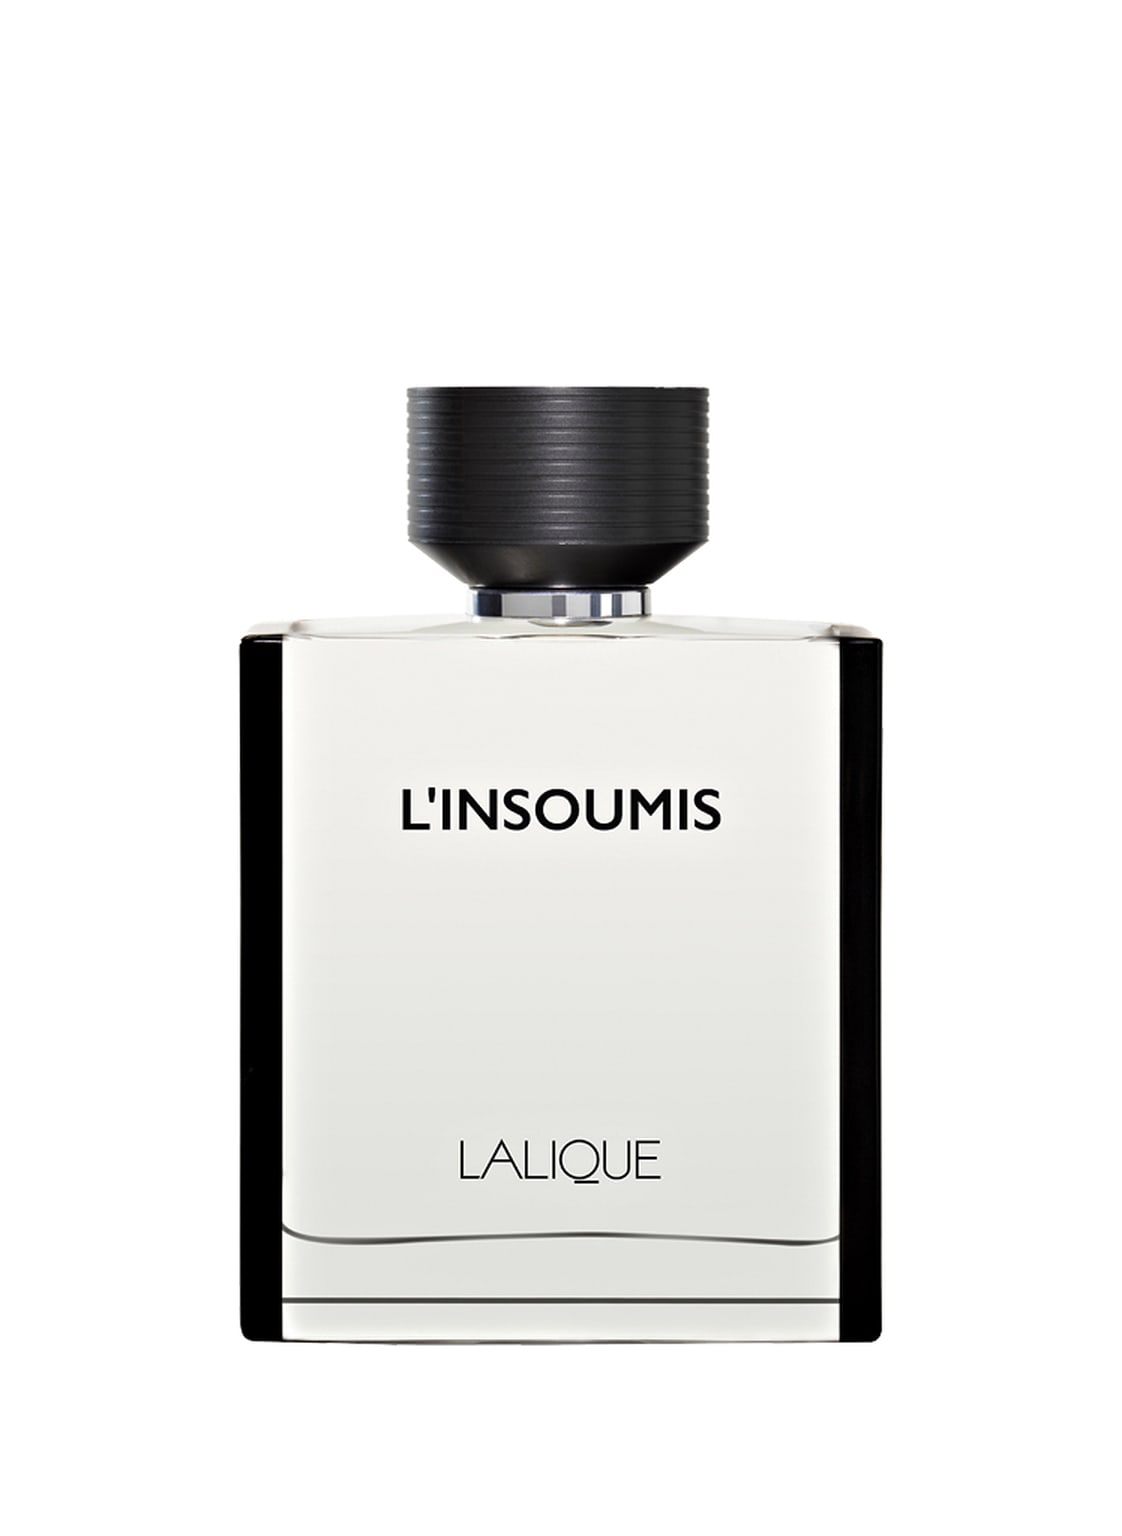 Image of Lalique Parfums L'insoumis Eau de Toilette 50 ml